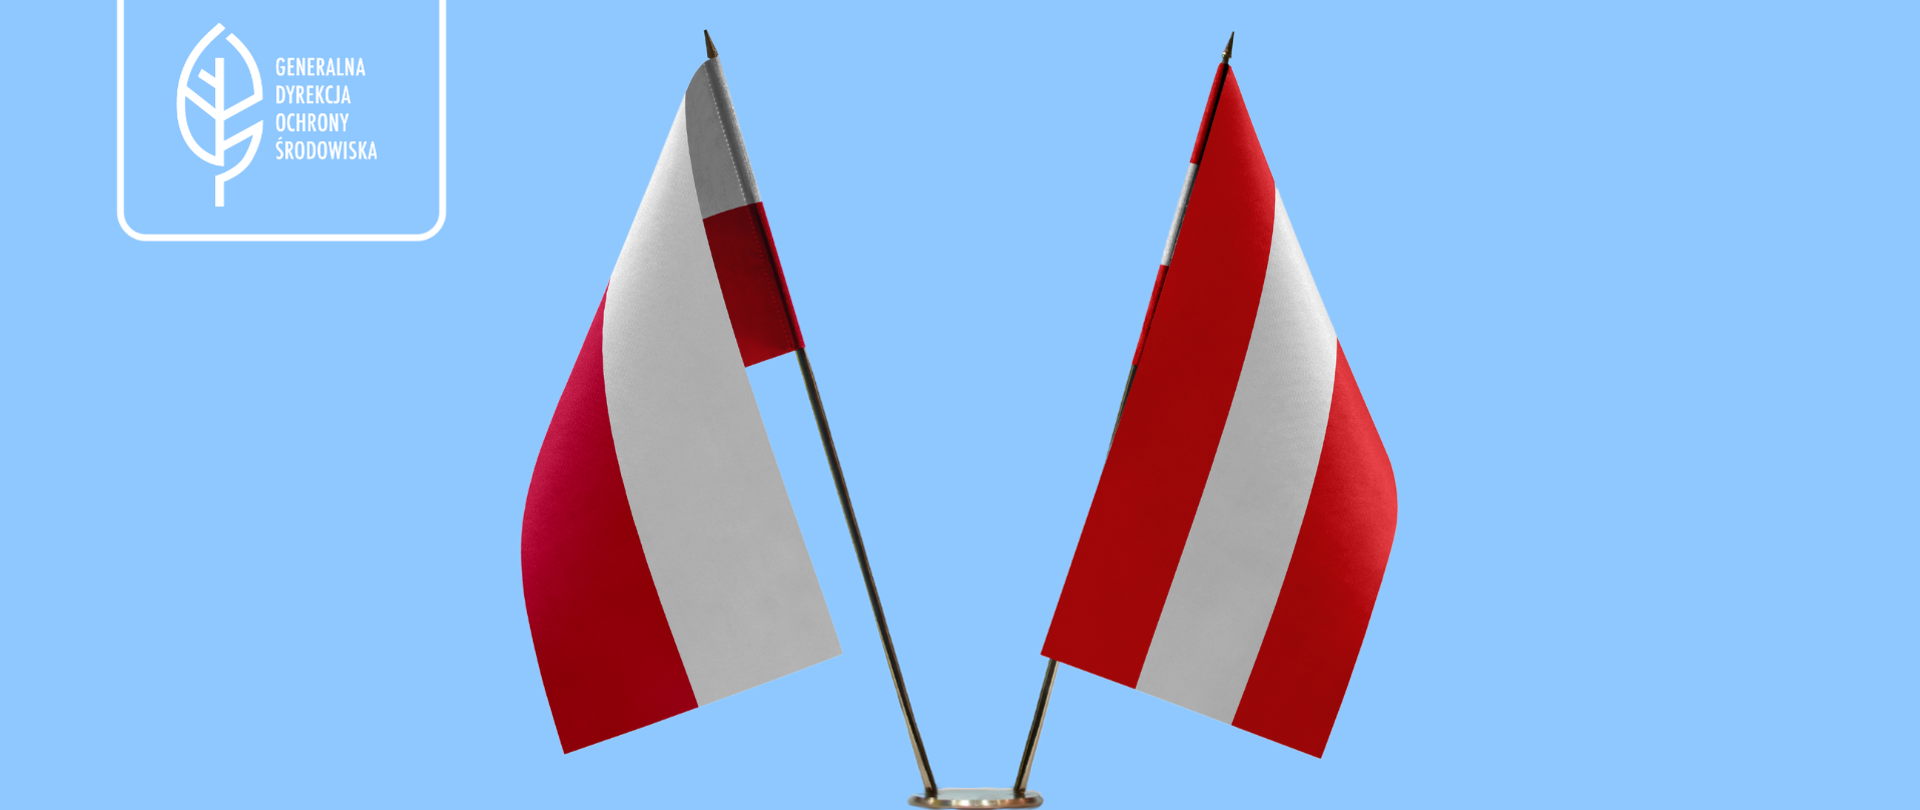 Na niebieskim na stojaku postawione są dwie flagi: Polski i Danii (obie w kolorach białym i czerwonym).
W lewym górnym rogu logotyp Generalnej Dyrekcji Ochrony Środowiska (biały liść).